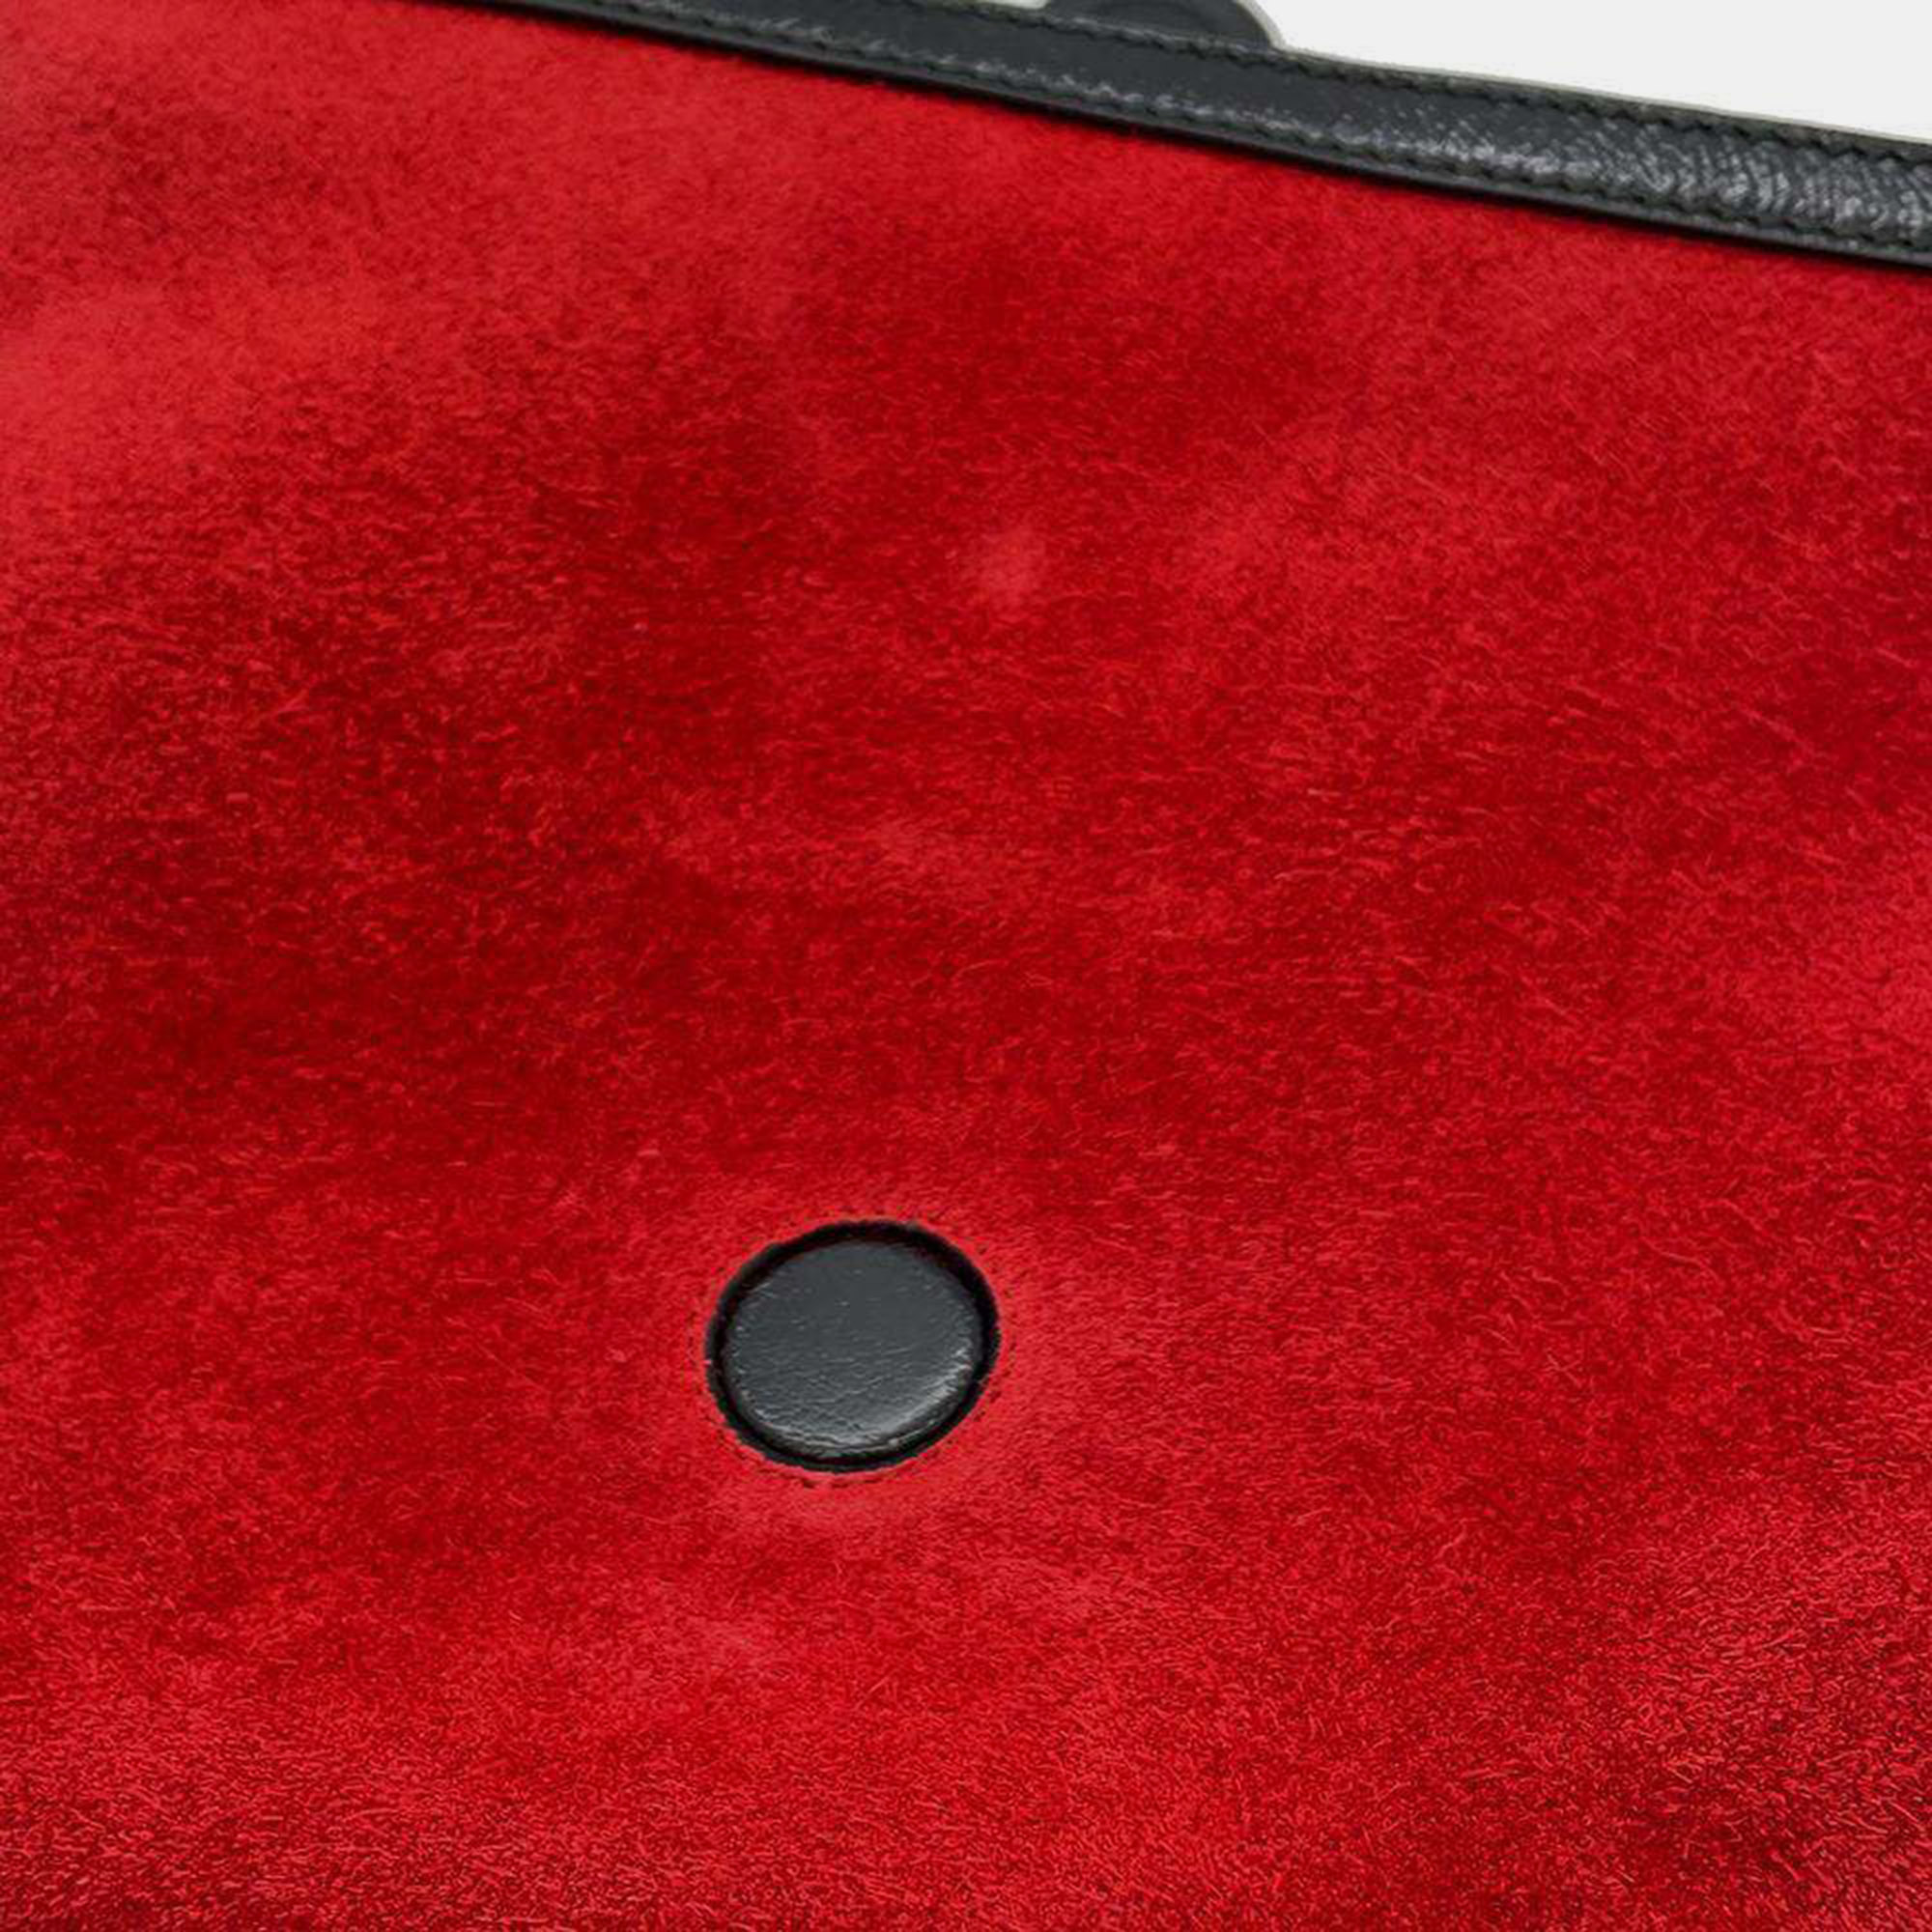 Gucci Red Velvet Medium Dionysus Tote Bag